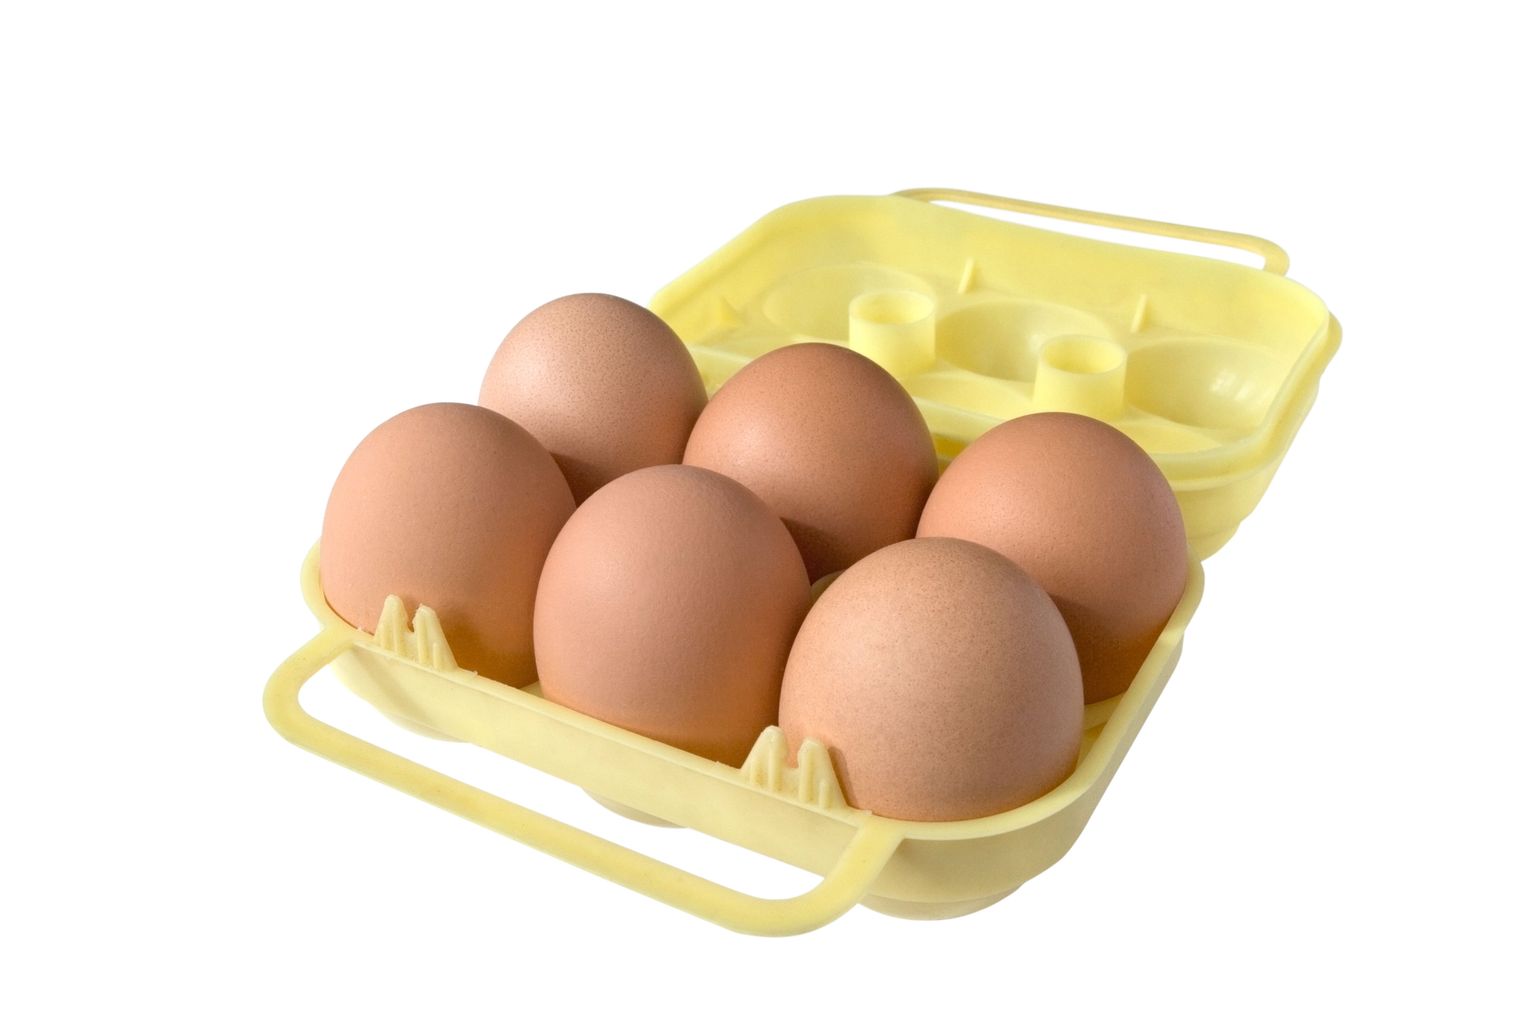 Salmonelloos levib peamiselt bakteriga saastunud mune toiduks tarvitades.